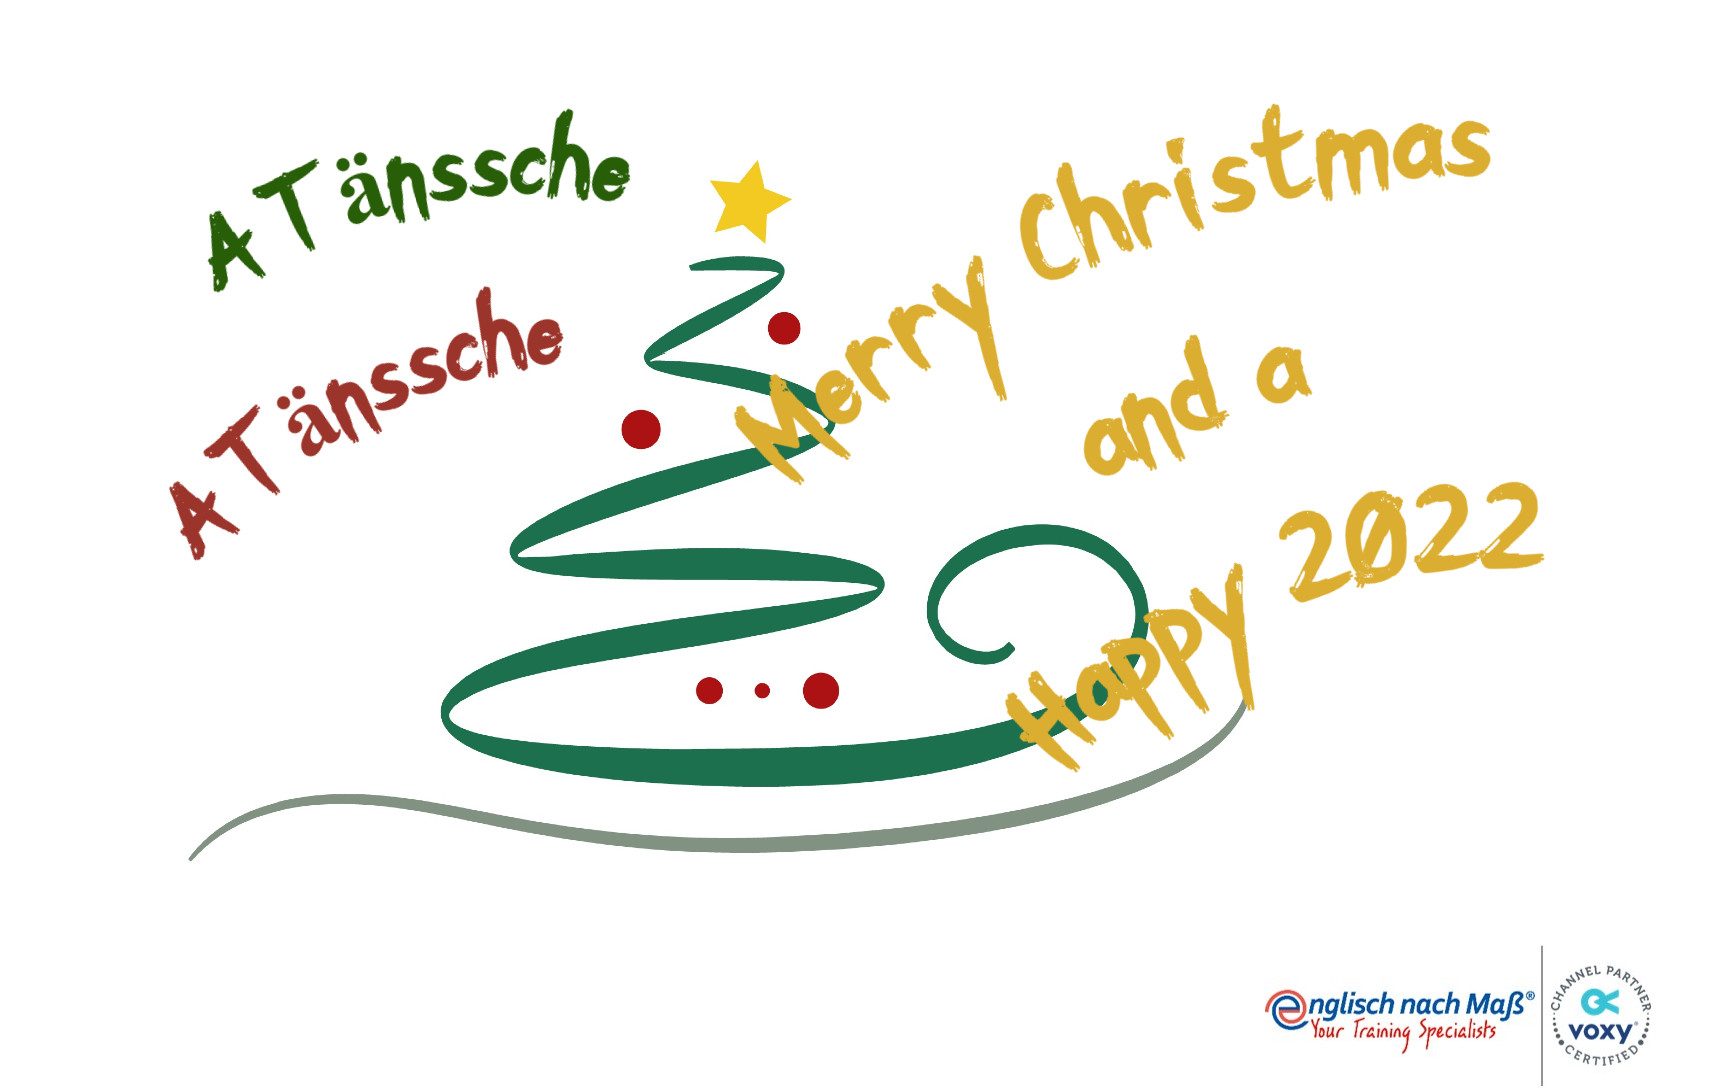 A Tännsche A Tännsche Merry Christmas and a Happy 2022